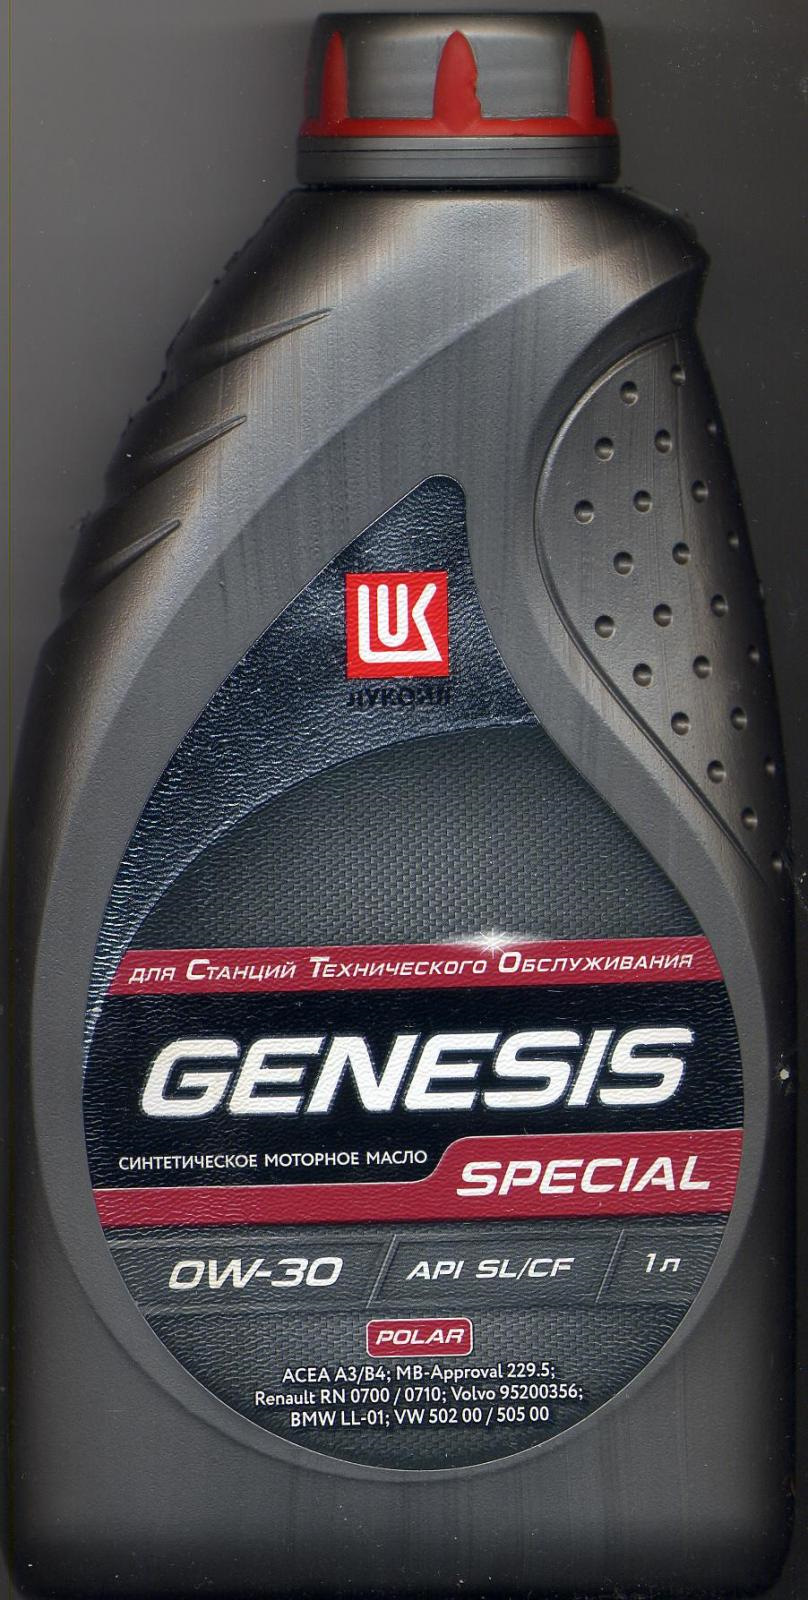 Lukoil genesis special. Лукойл Genesis Special Polar 0w-30 1 л. Lukoil Genesis Special 0w-30. Масло Lukoil Genesis Special 0w30. 0w30 Лукойл Genesis.